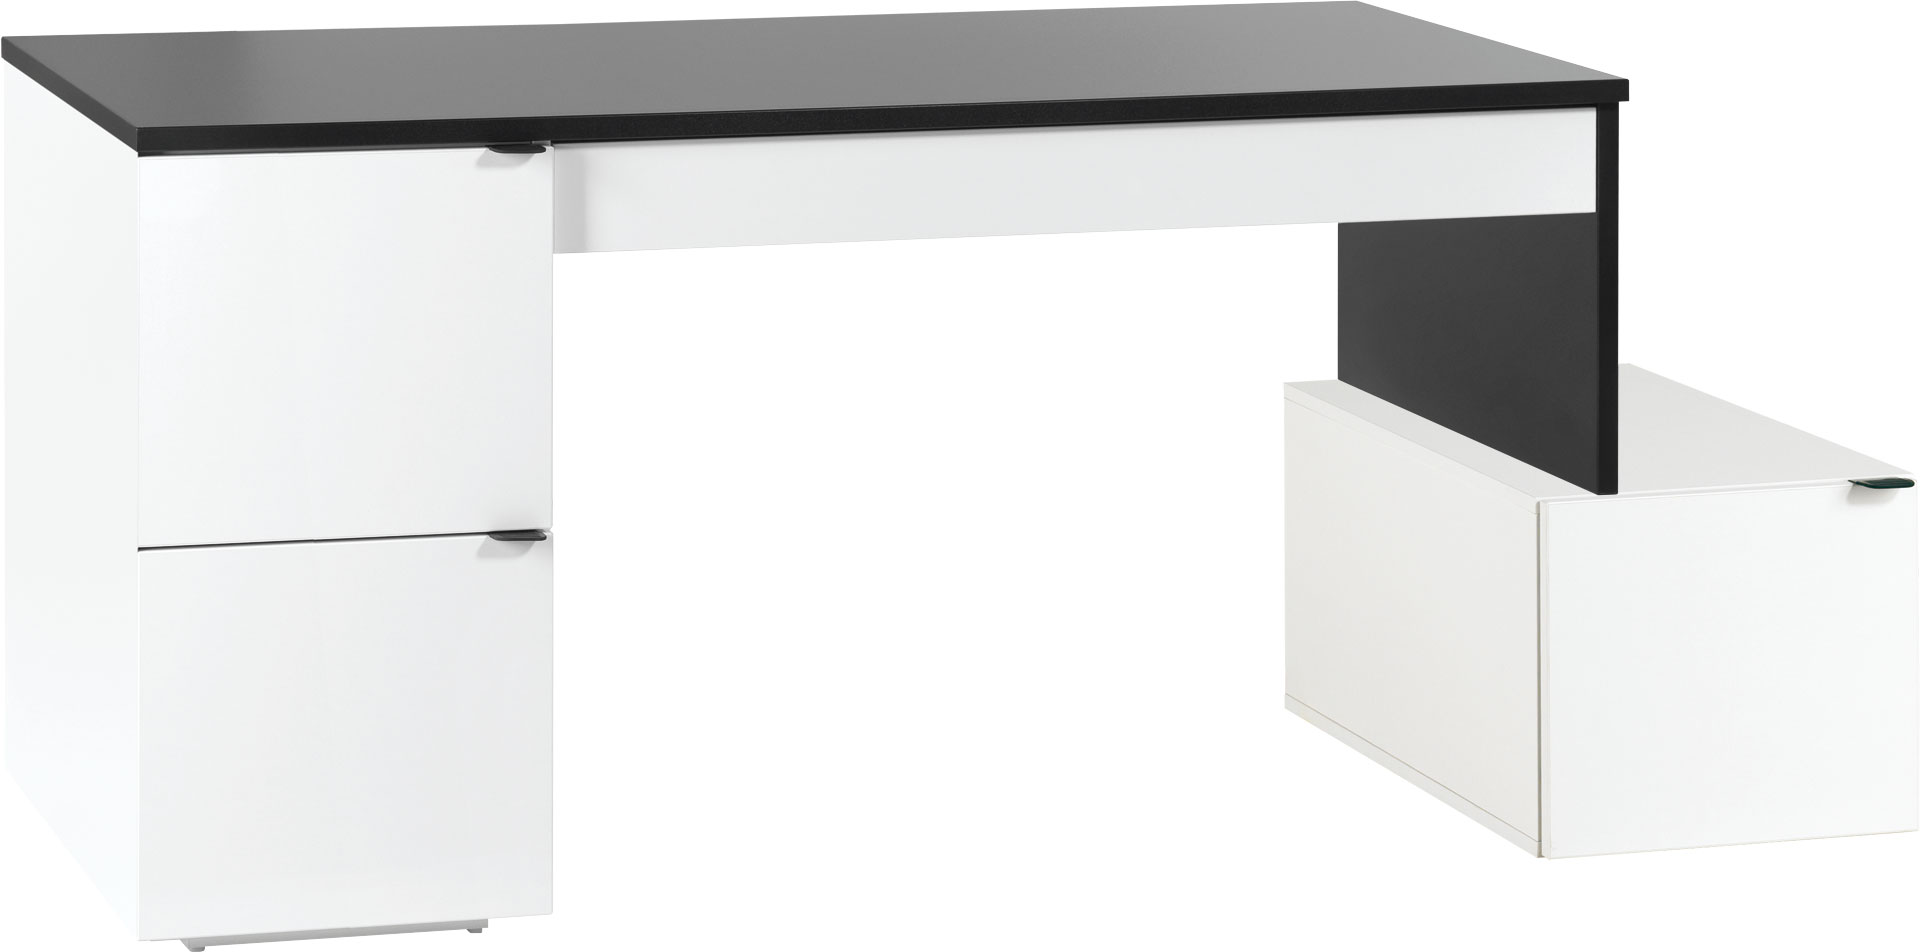 Desk 140L with storage unit